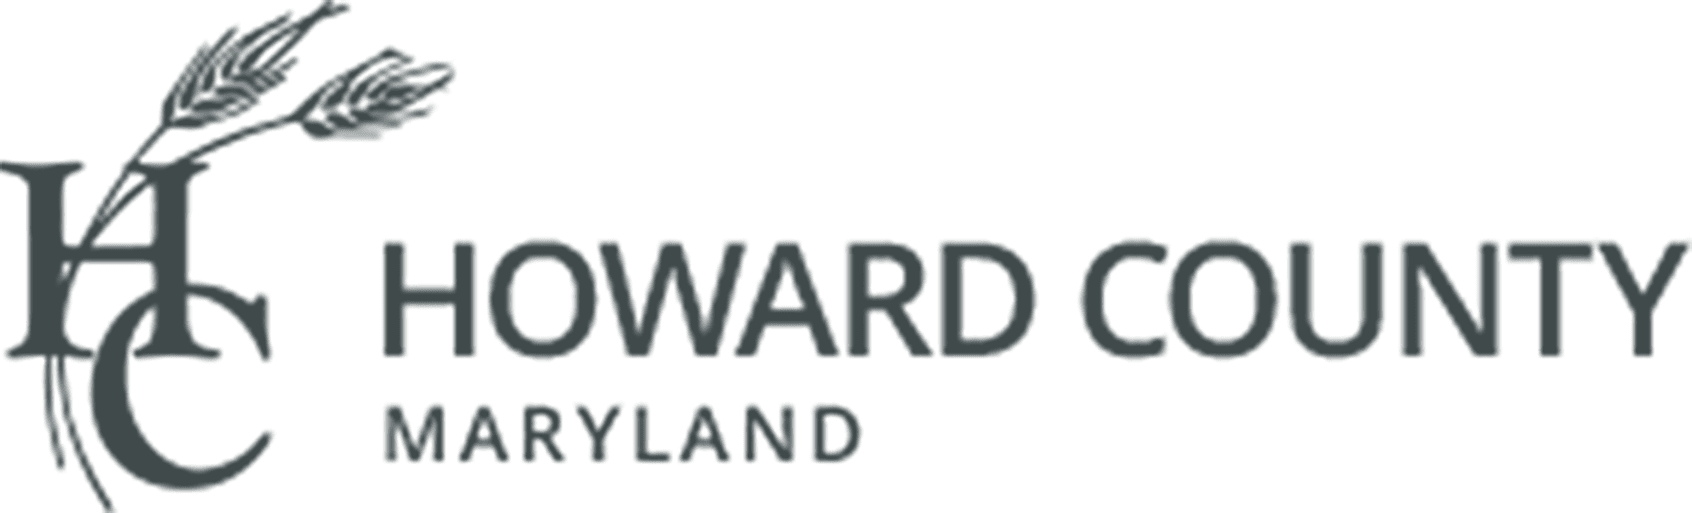 seadmock-howard county logo